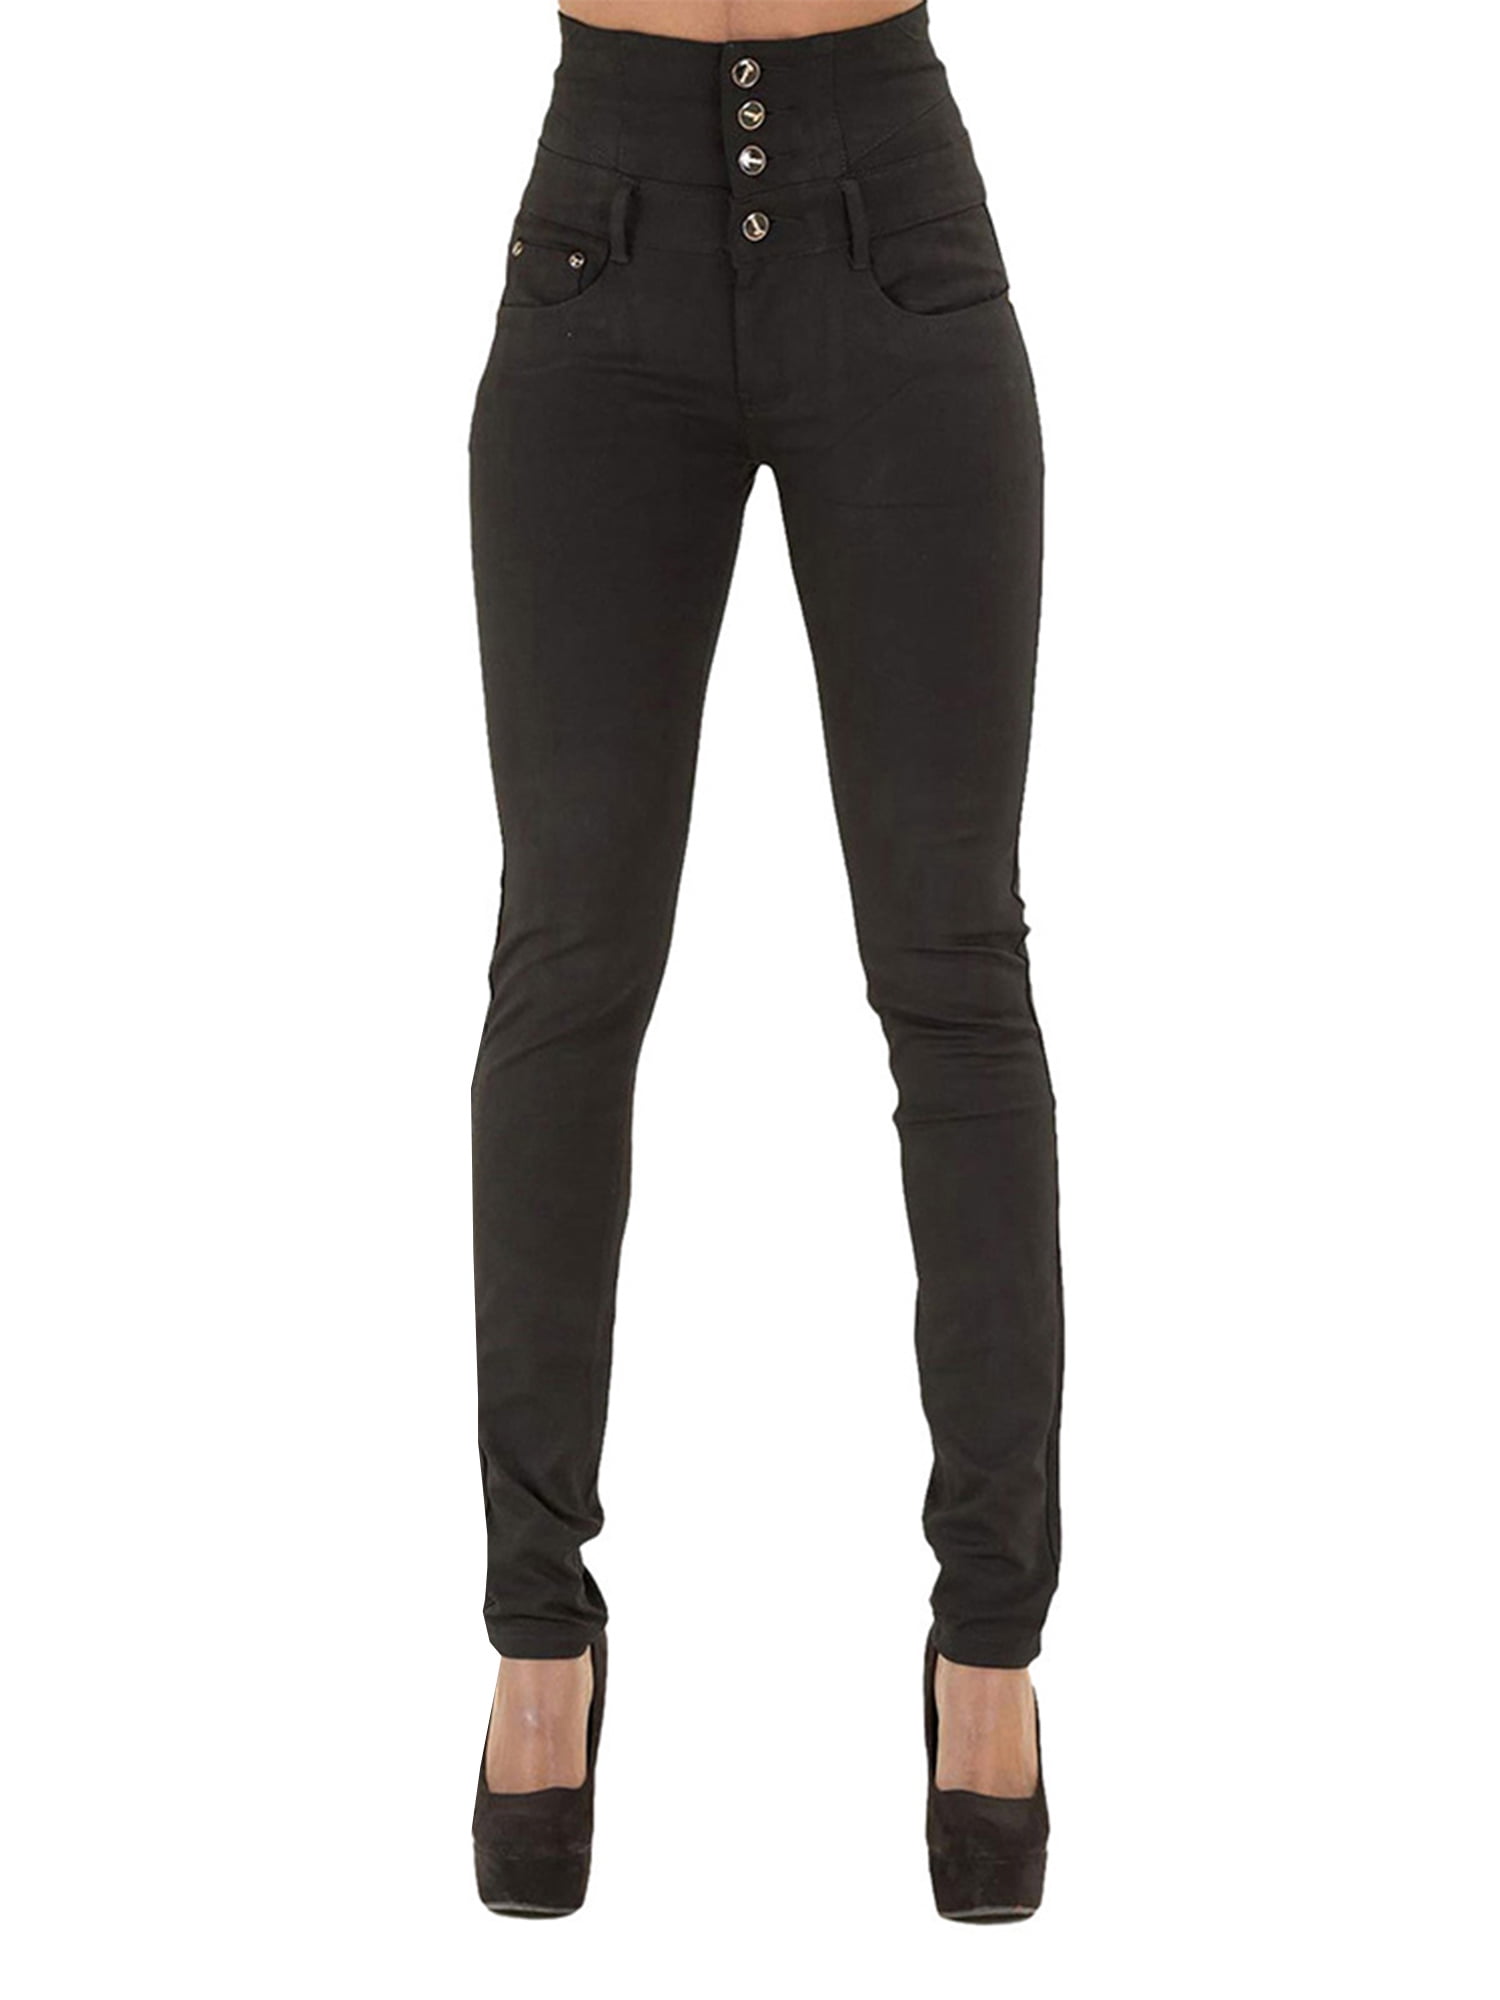 JustVH Women High-waisted Butt Lifting Skinny Stretch Jeans Button Zipper  Fly Denim Pants - Walmart.com